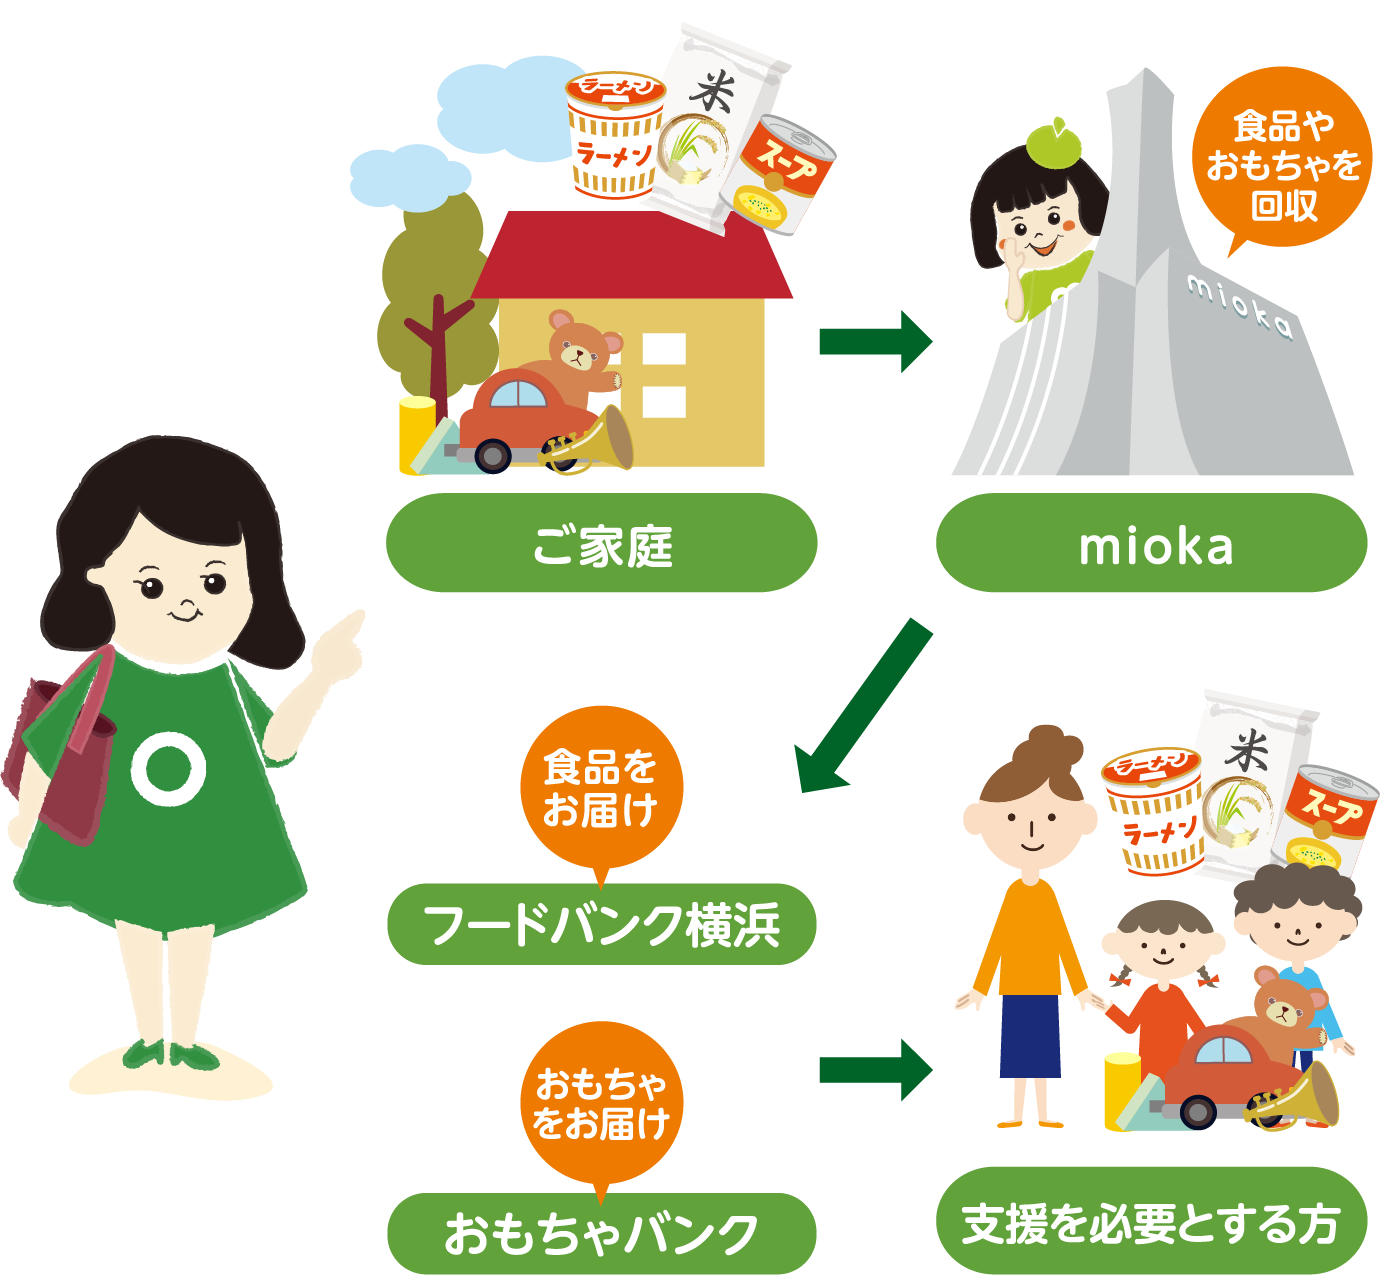 流れの紹介、ご家庭→MIOKA→フードバンク横浜、または、おもちゃバンク→支援を必要とする方へ